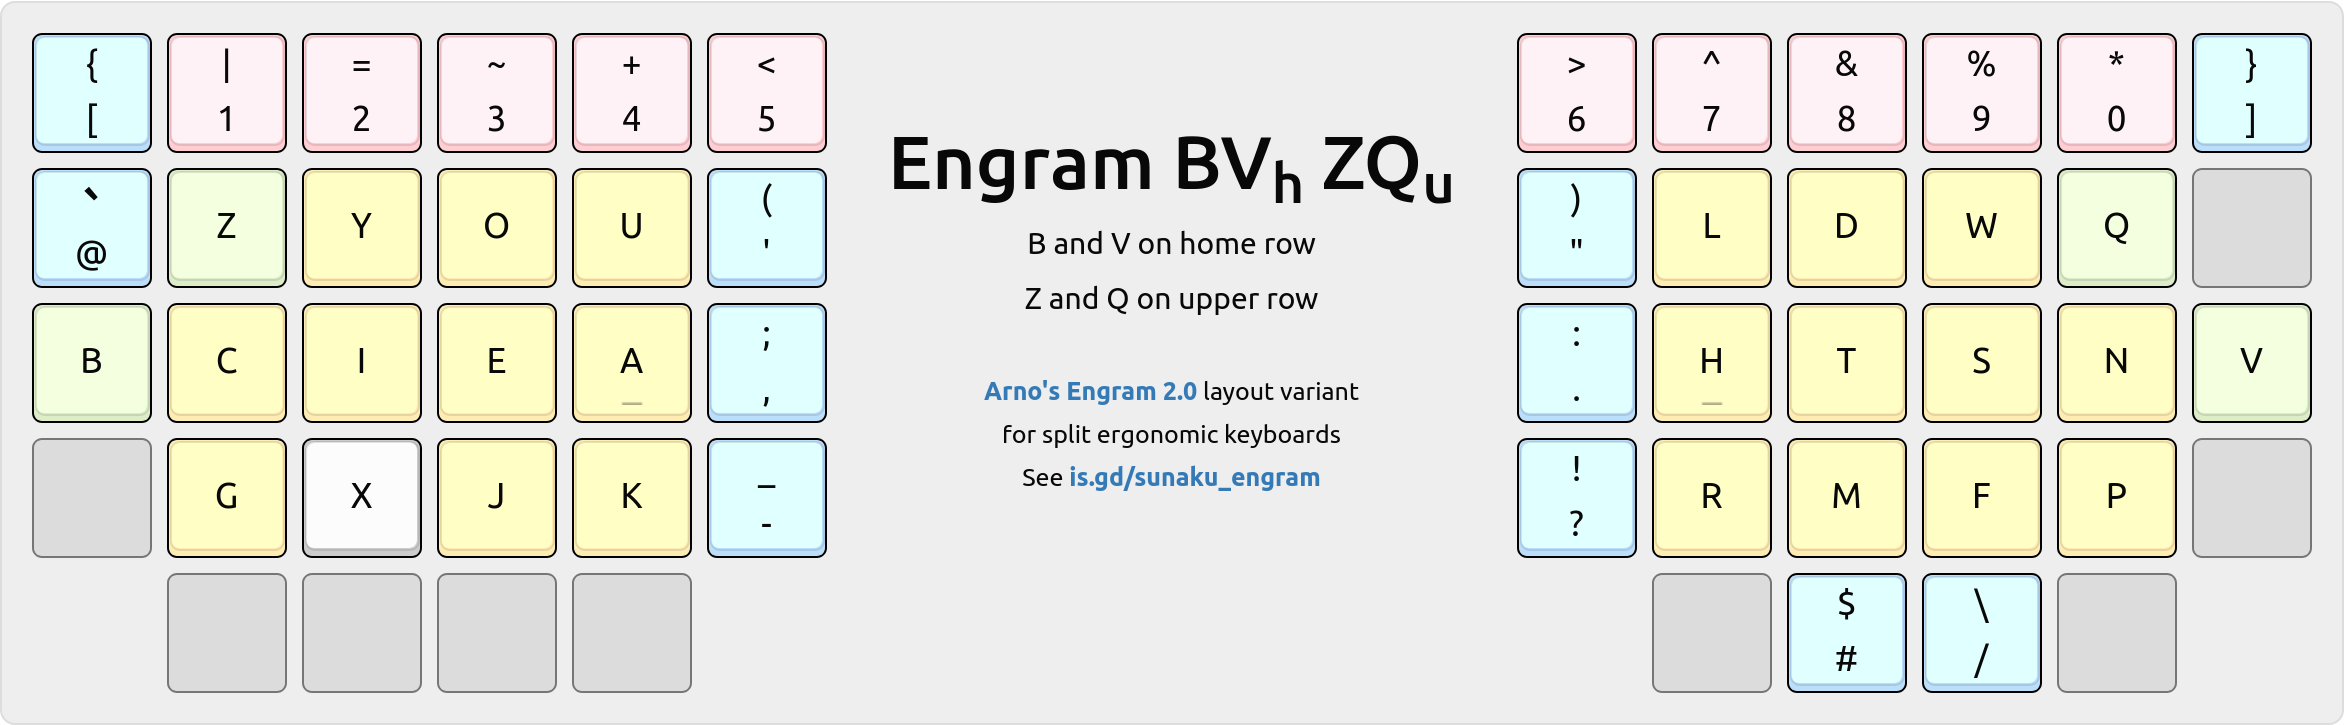 Engram-BVh-ZQu variant